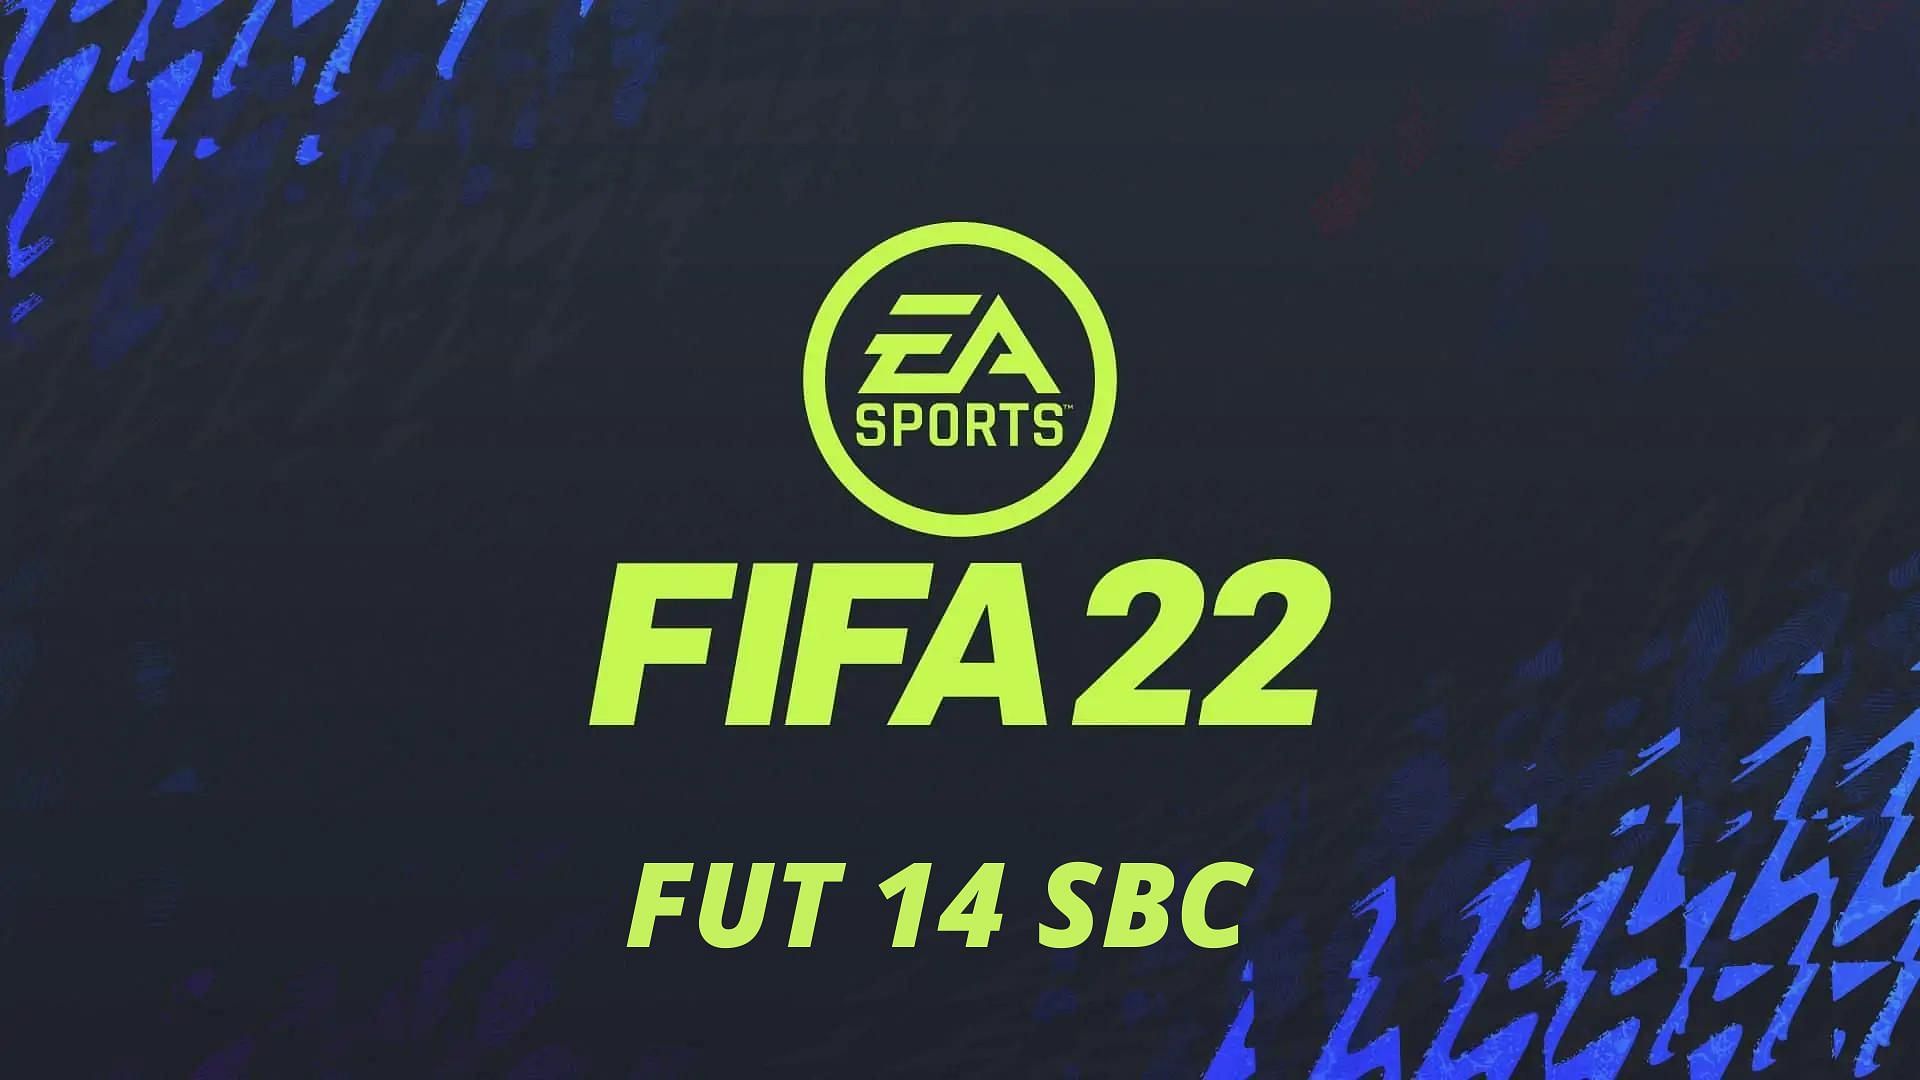 FUT 14 SBC is live in FIFA 22 Ultimate Team (Image via Sportskeeda)